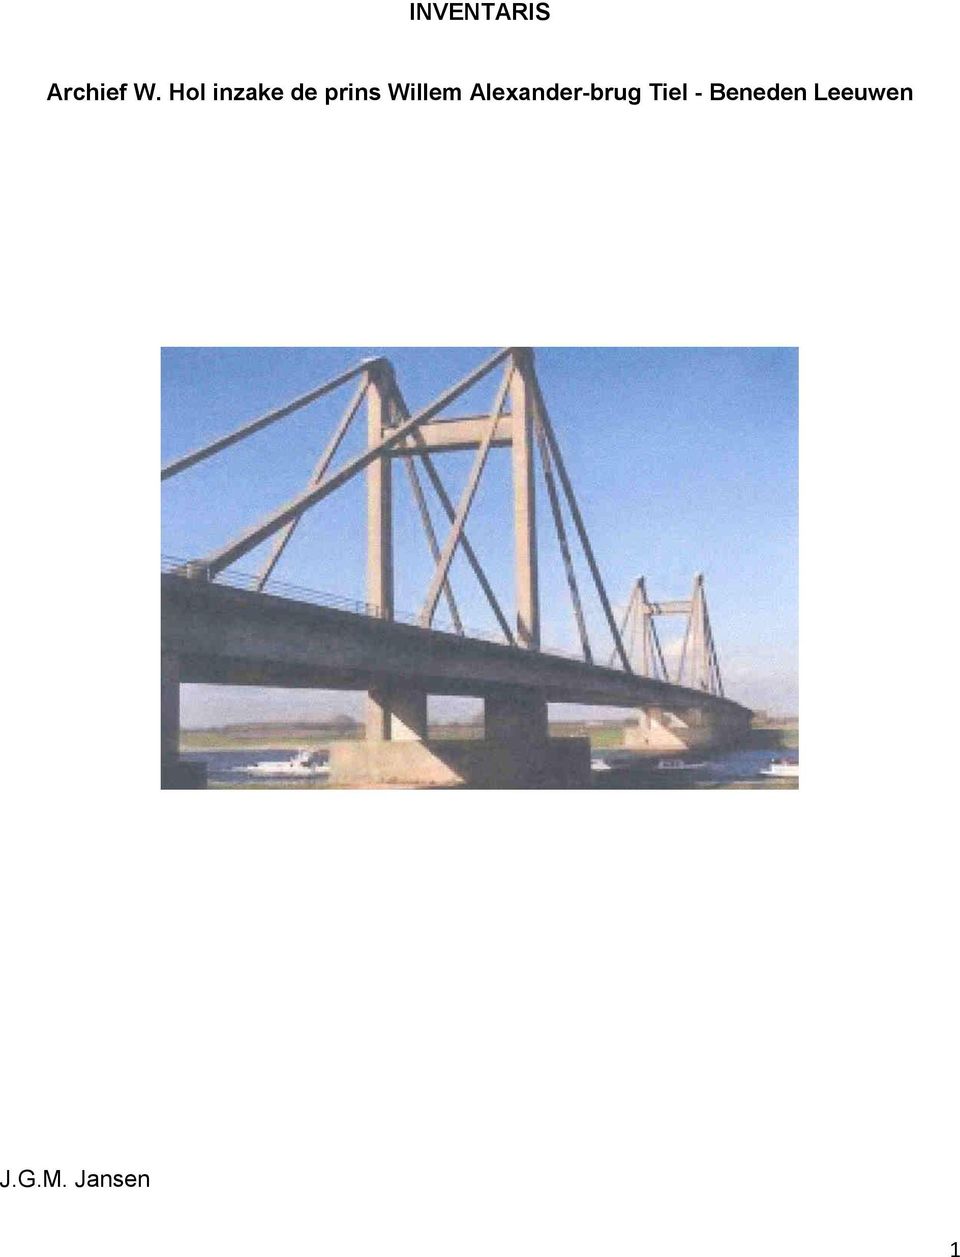 Willem Alexander-brug